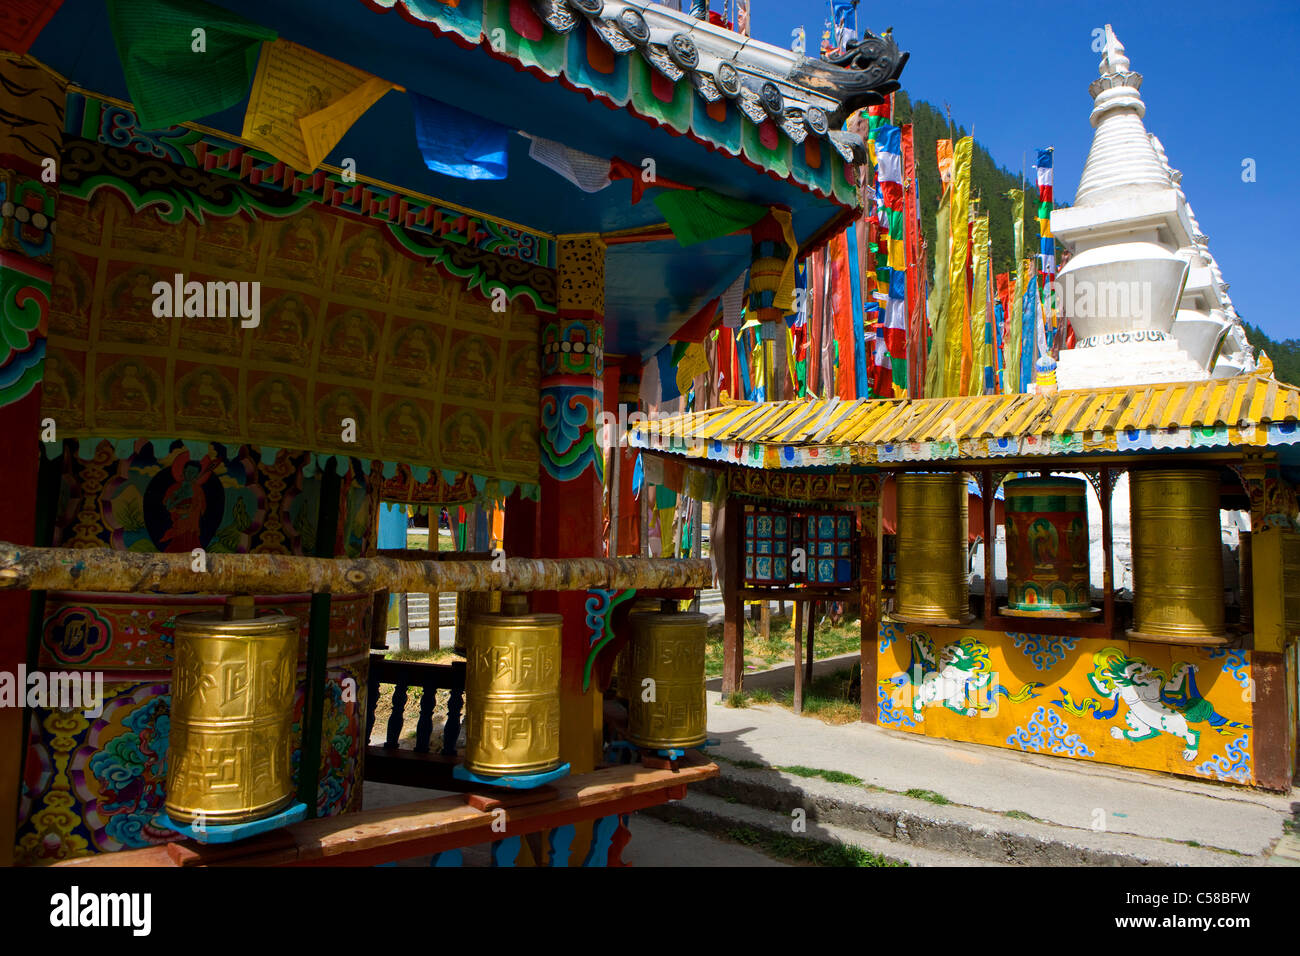 ShuZheng Village, China, Asien, Dorf, religiöse Stätte, Platz, Gebetsfahnen, Stupas, Gebet Mühlen Stockfoto